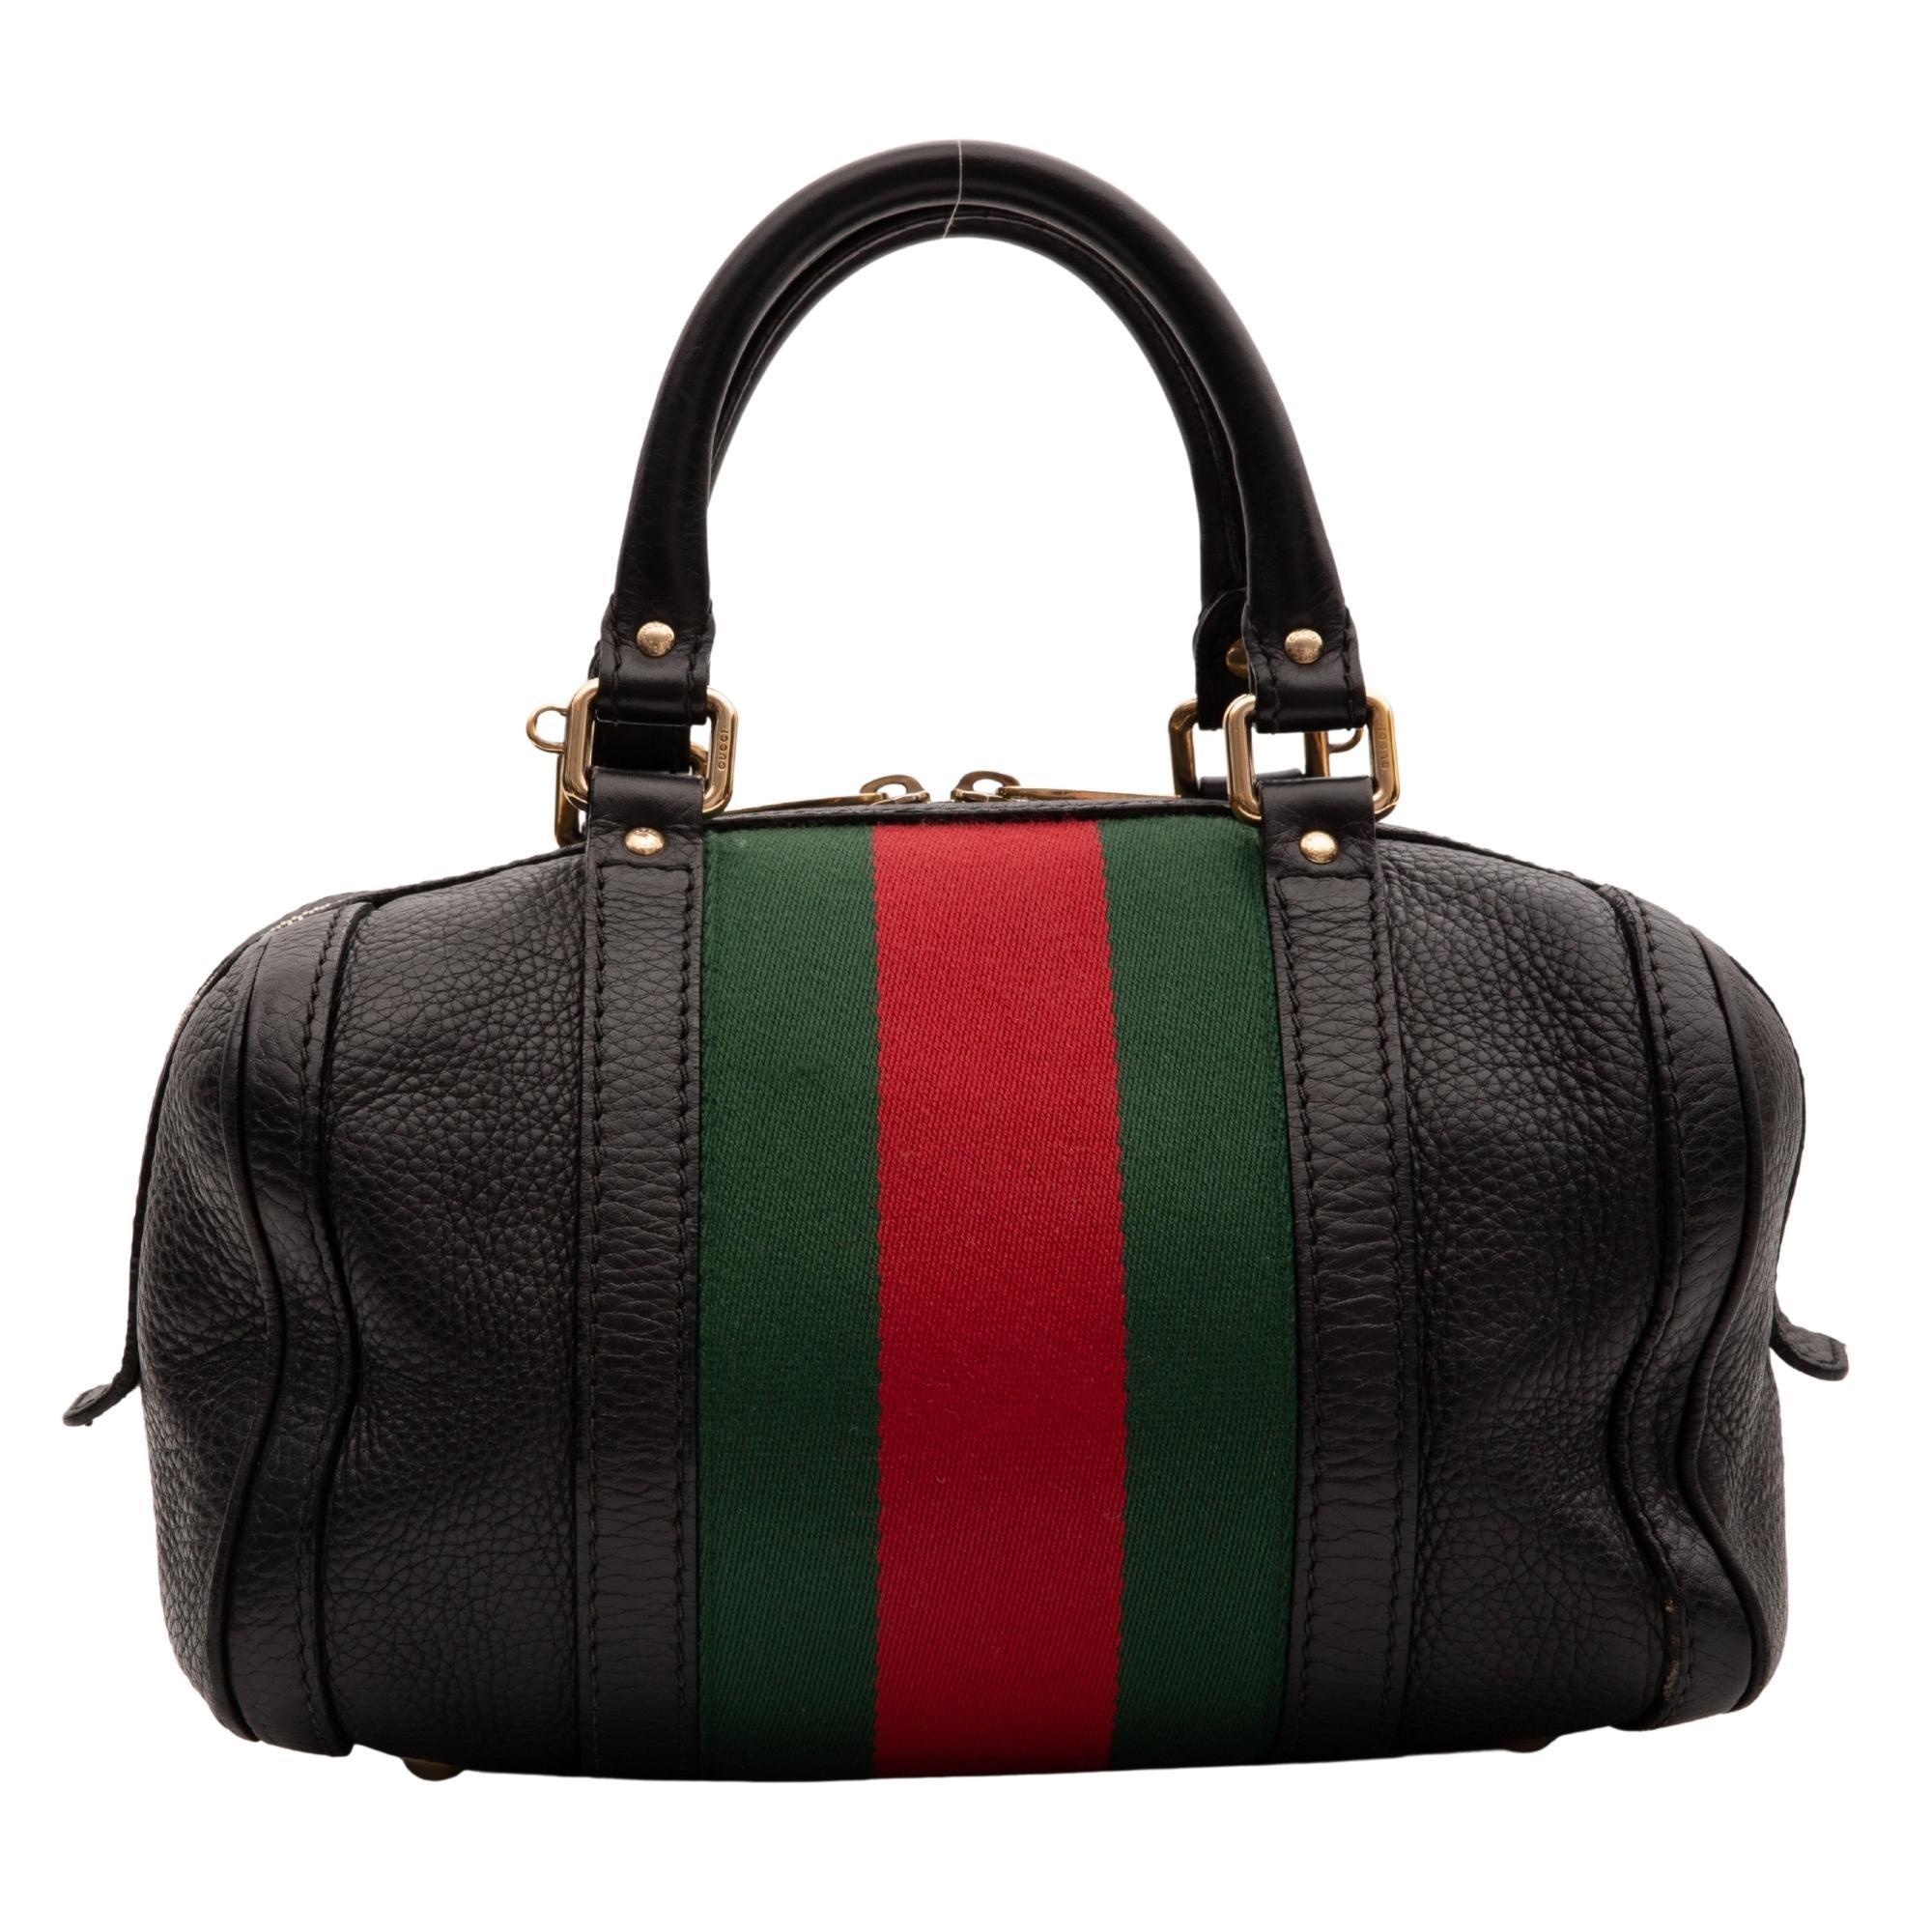 Diese Tasche im Boston-Stil ist aus strukturiertem Kalbsleder in Schwarz gefertigt. Die Tasche hat einen rot-grünen Canvas-Streifen um den Umfang der Tasche, zwei gerollte Ledergriffe, Messingbeschläge, einen Reißverschluss mit doppelter Lasche und